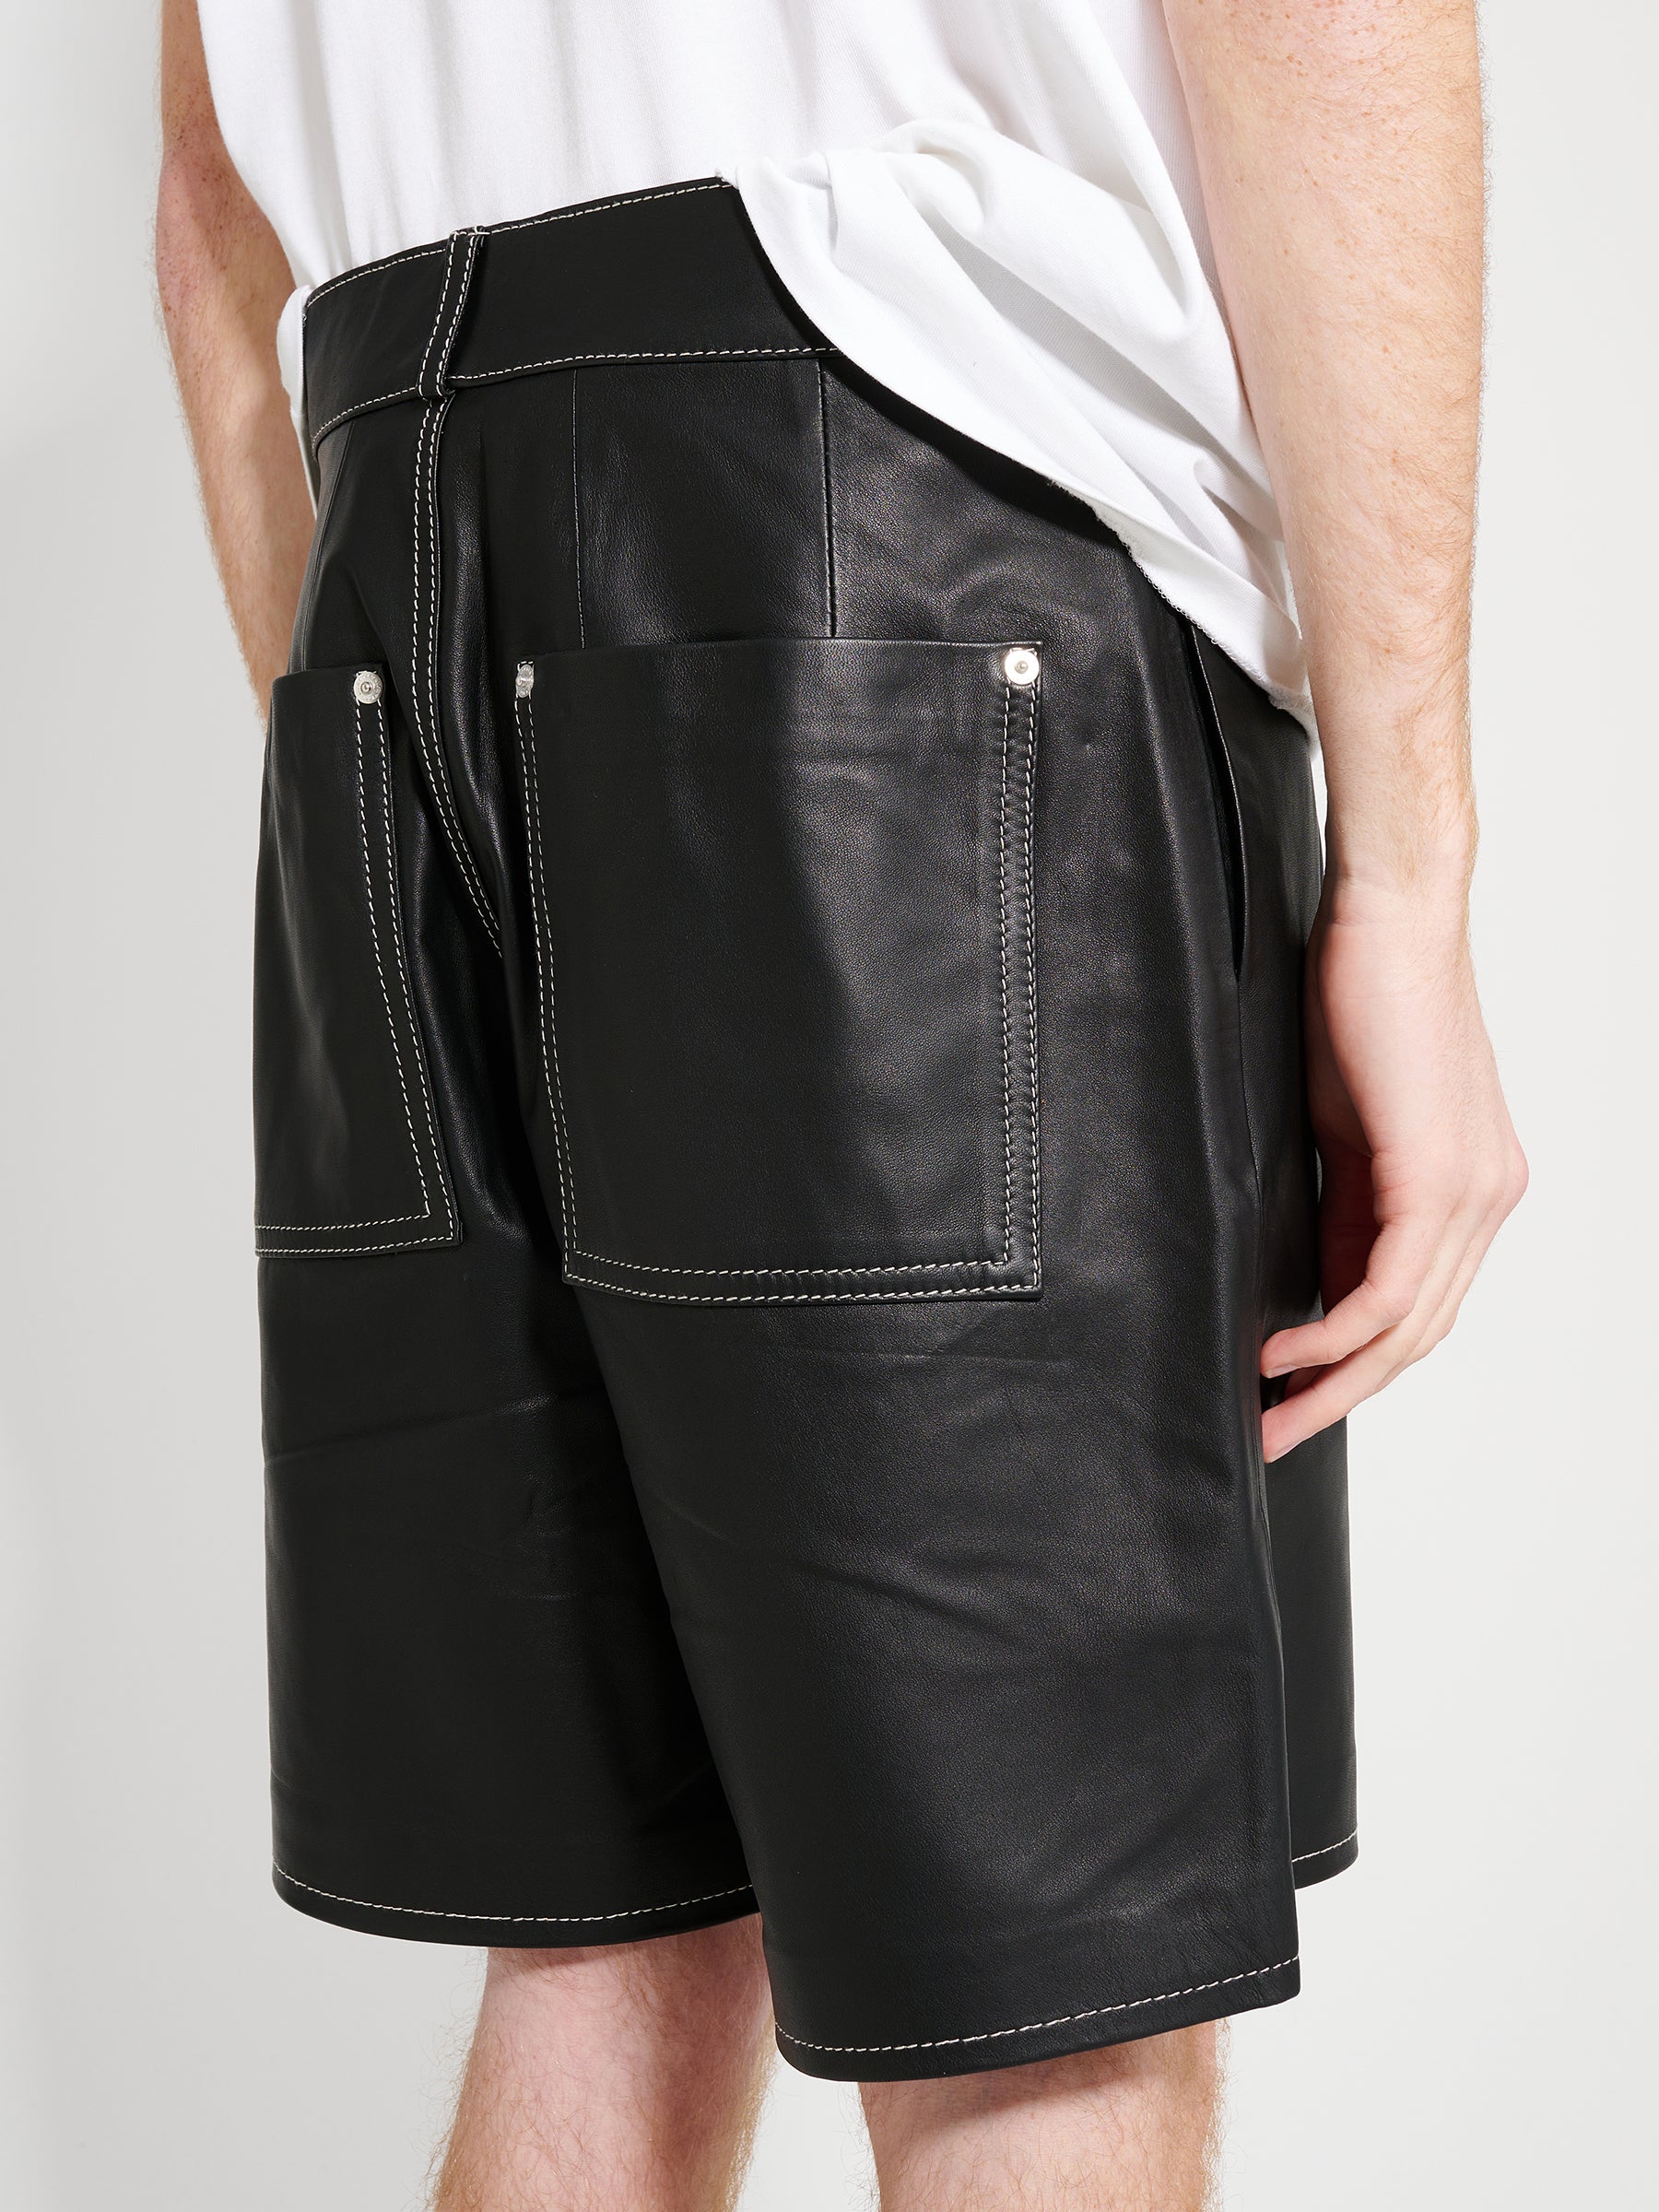 TRÈS BIEN everywear Leather Work Shorts Lambskin Black